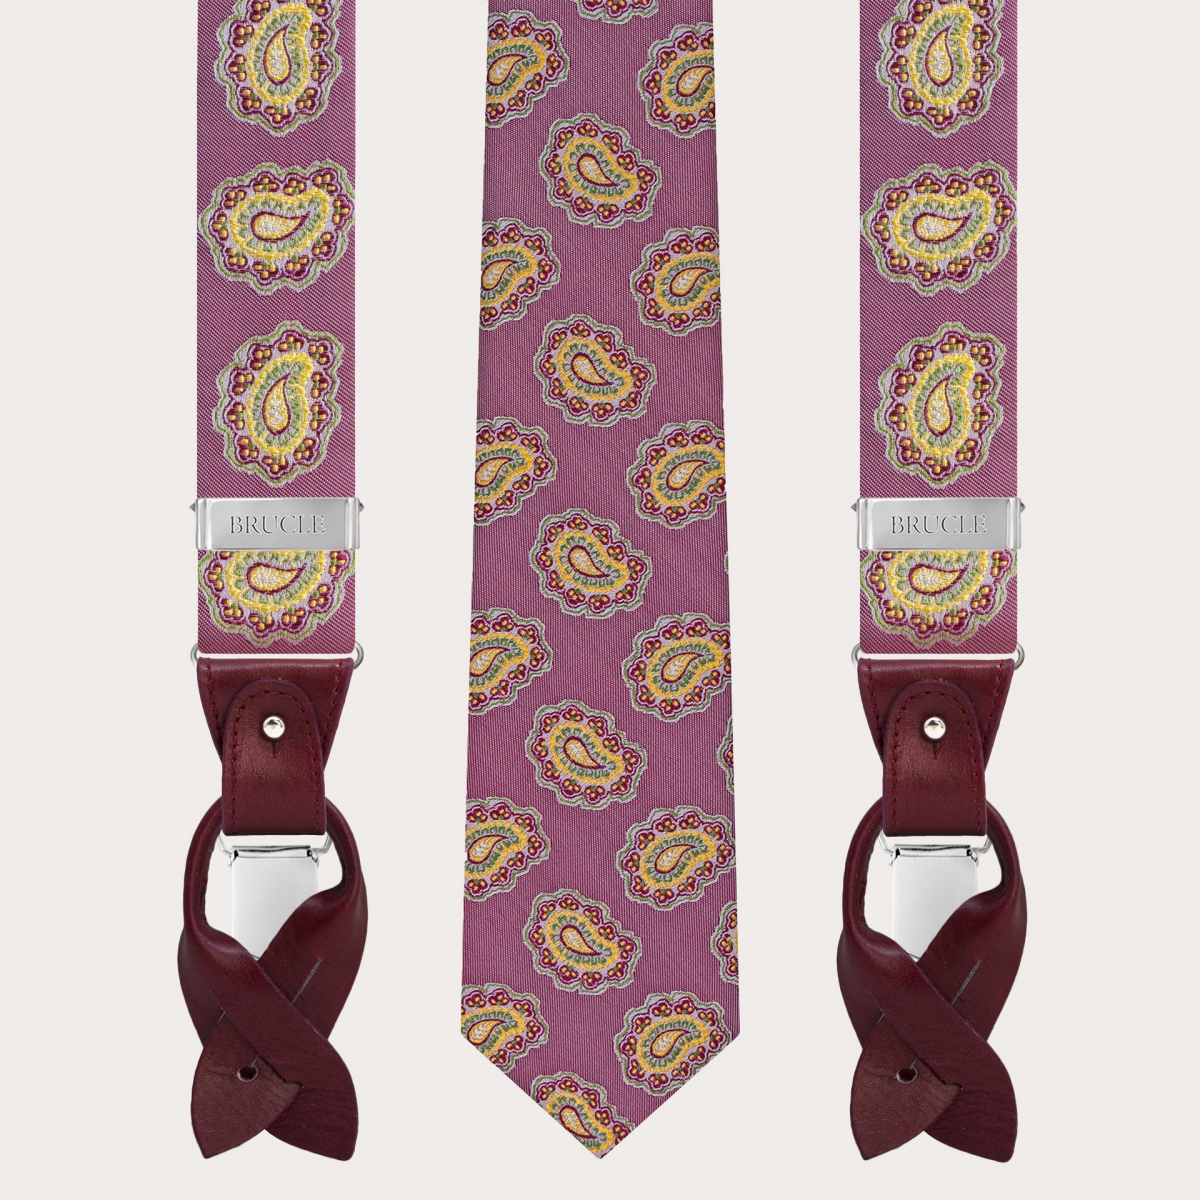 Bretelle e cravatta coordinate in seta, fantasia paisley rosso ciliegia